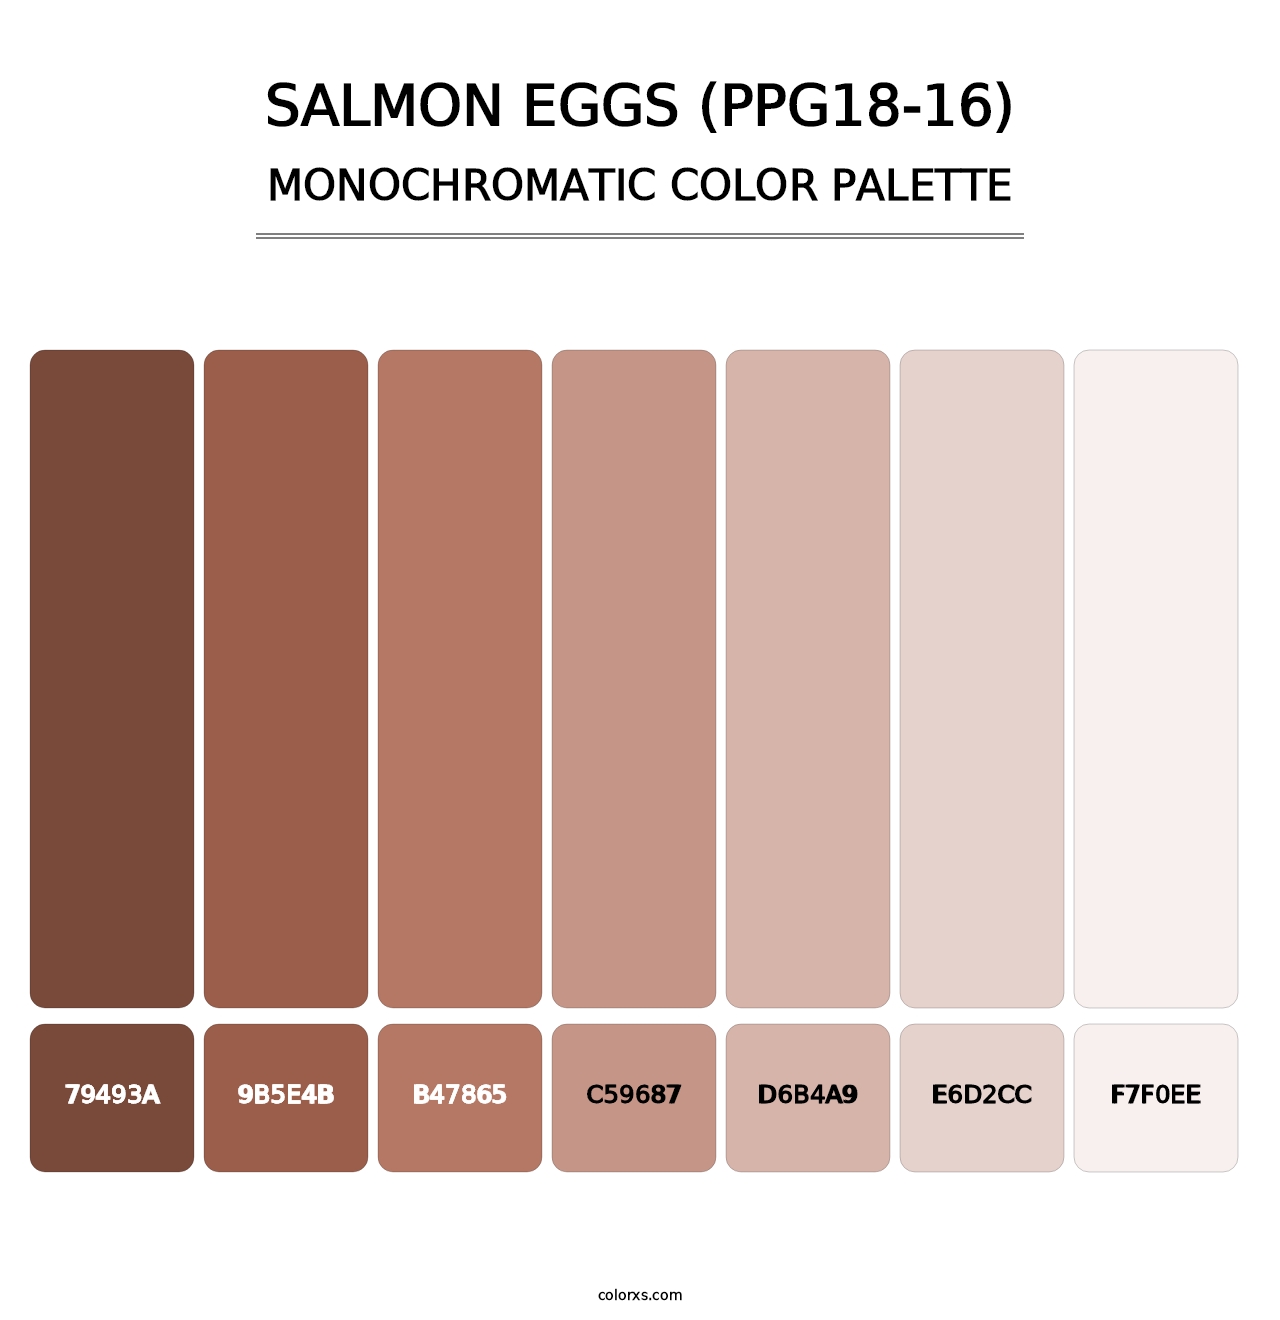 Salmon Eggs (PPG18-16) - Monochromatic Color Palette